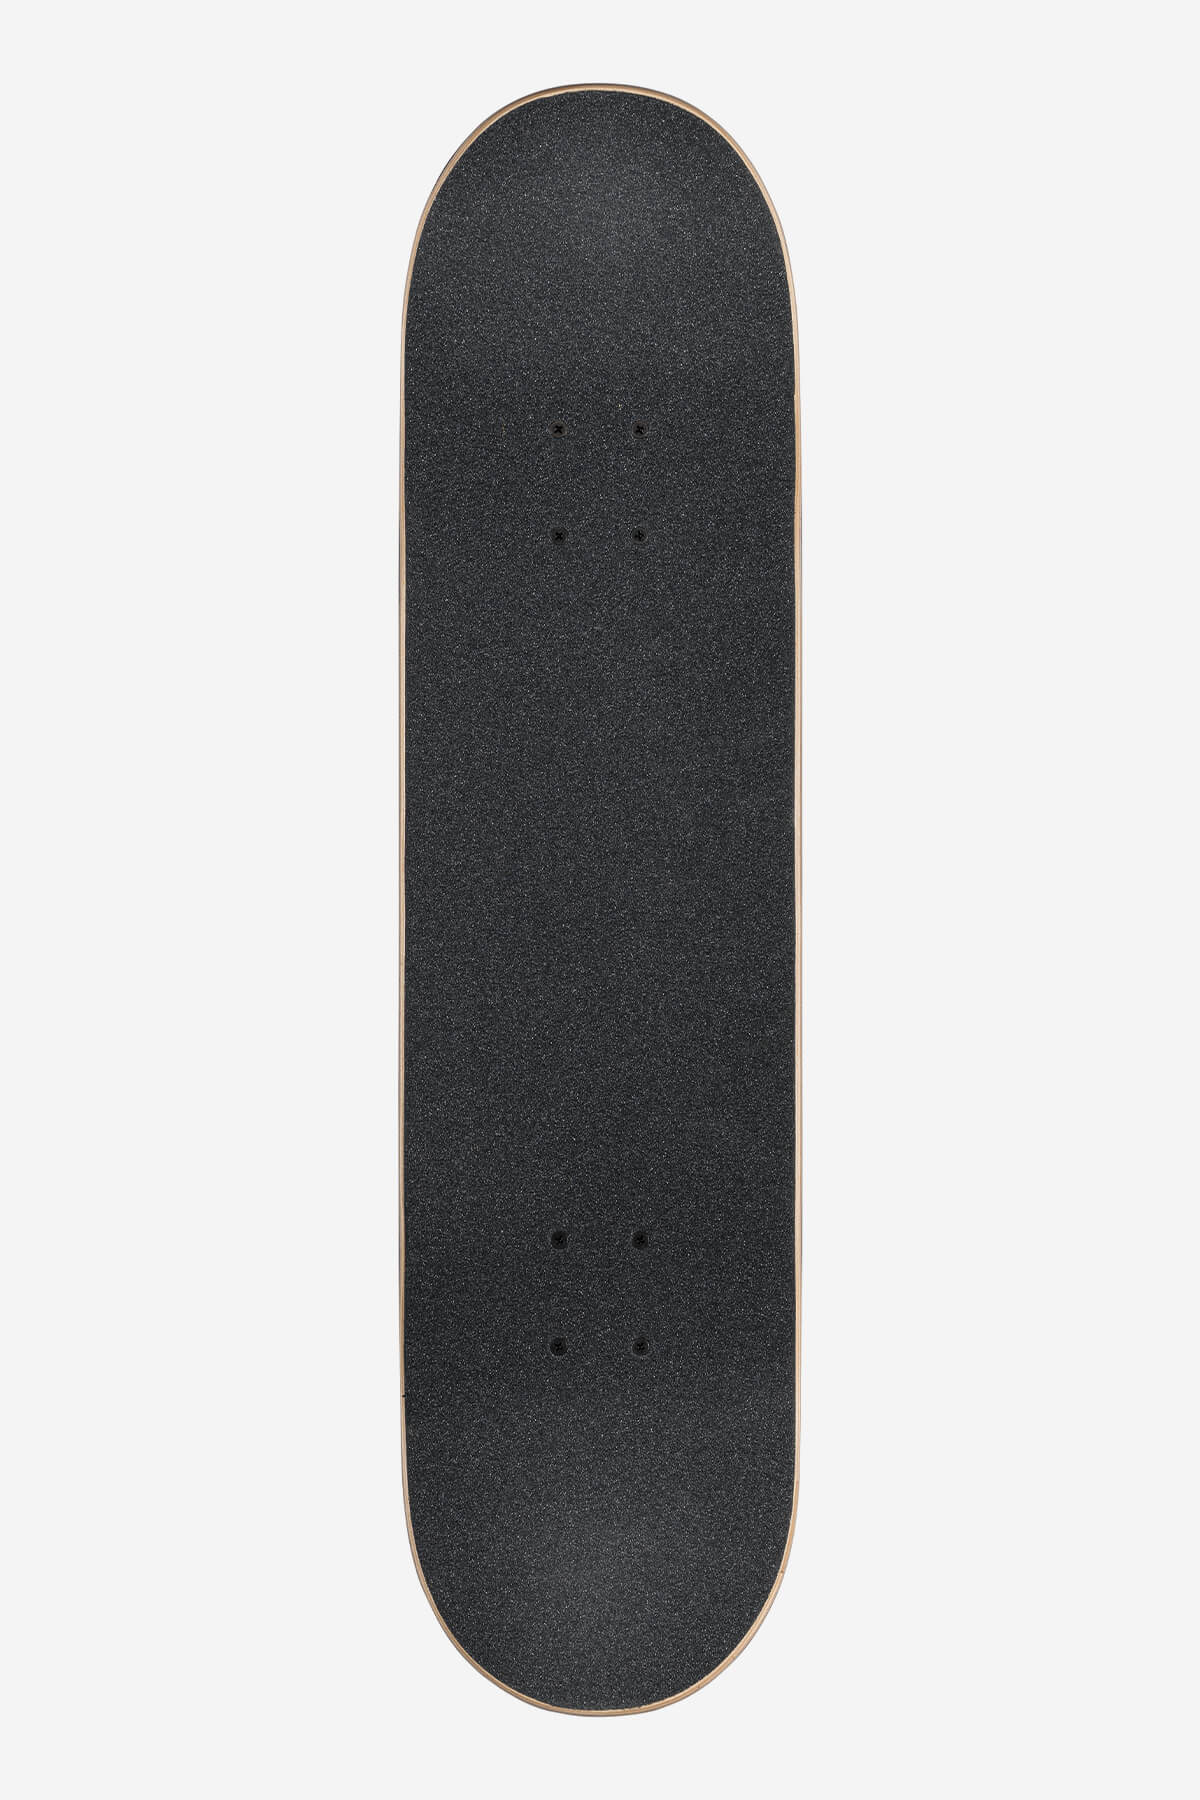 Globe Skateboard completes G1 Lineform 8.0" Complete Skateboard in Olive